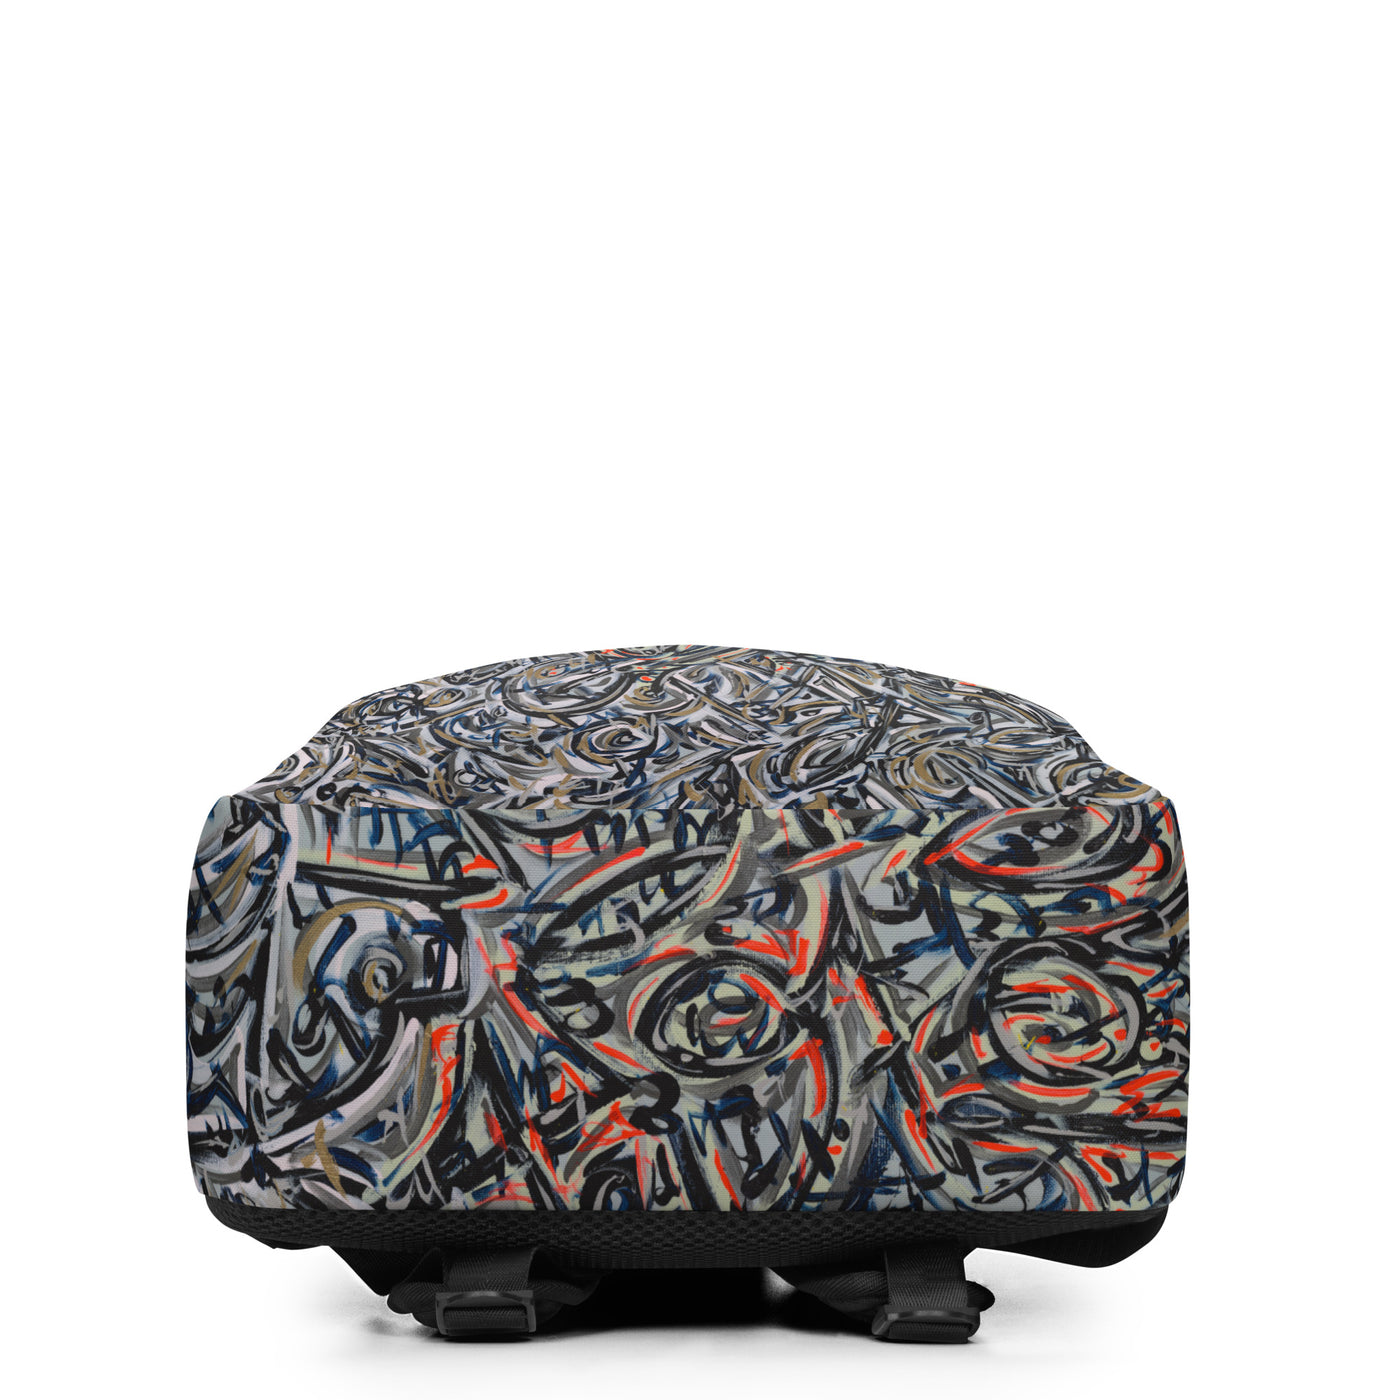 Momentum Art Minimalist Backpack